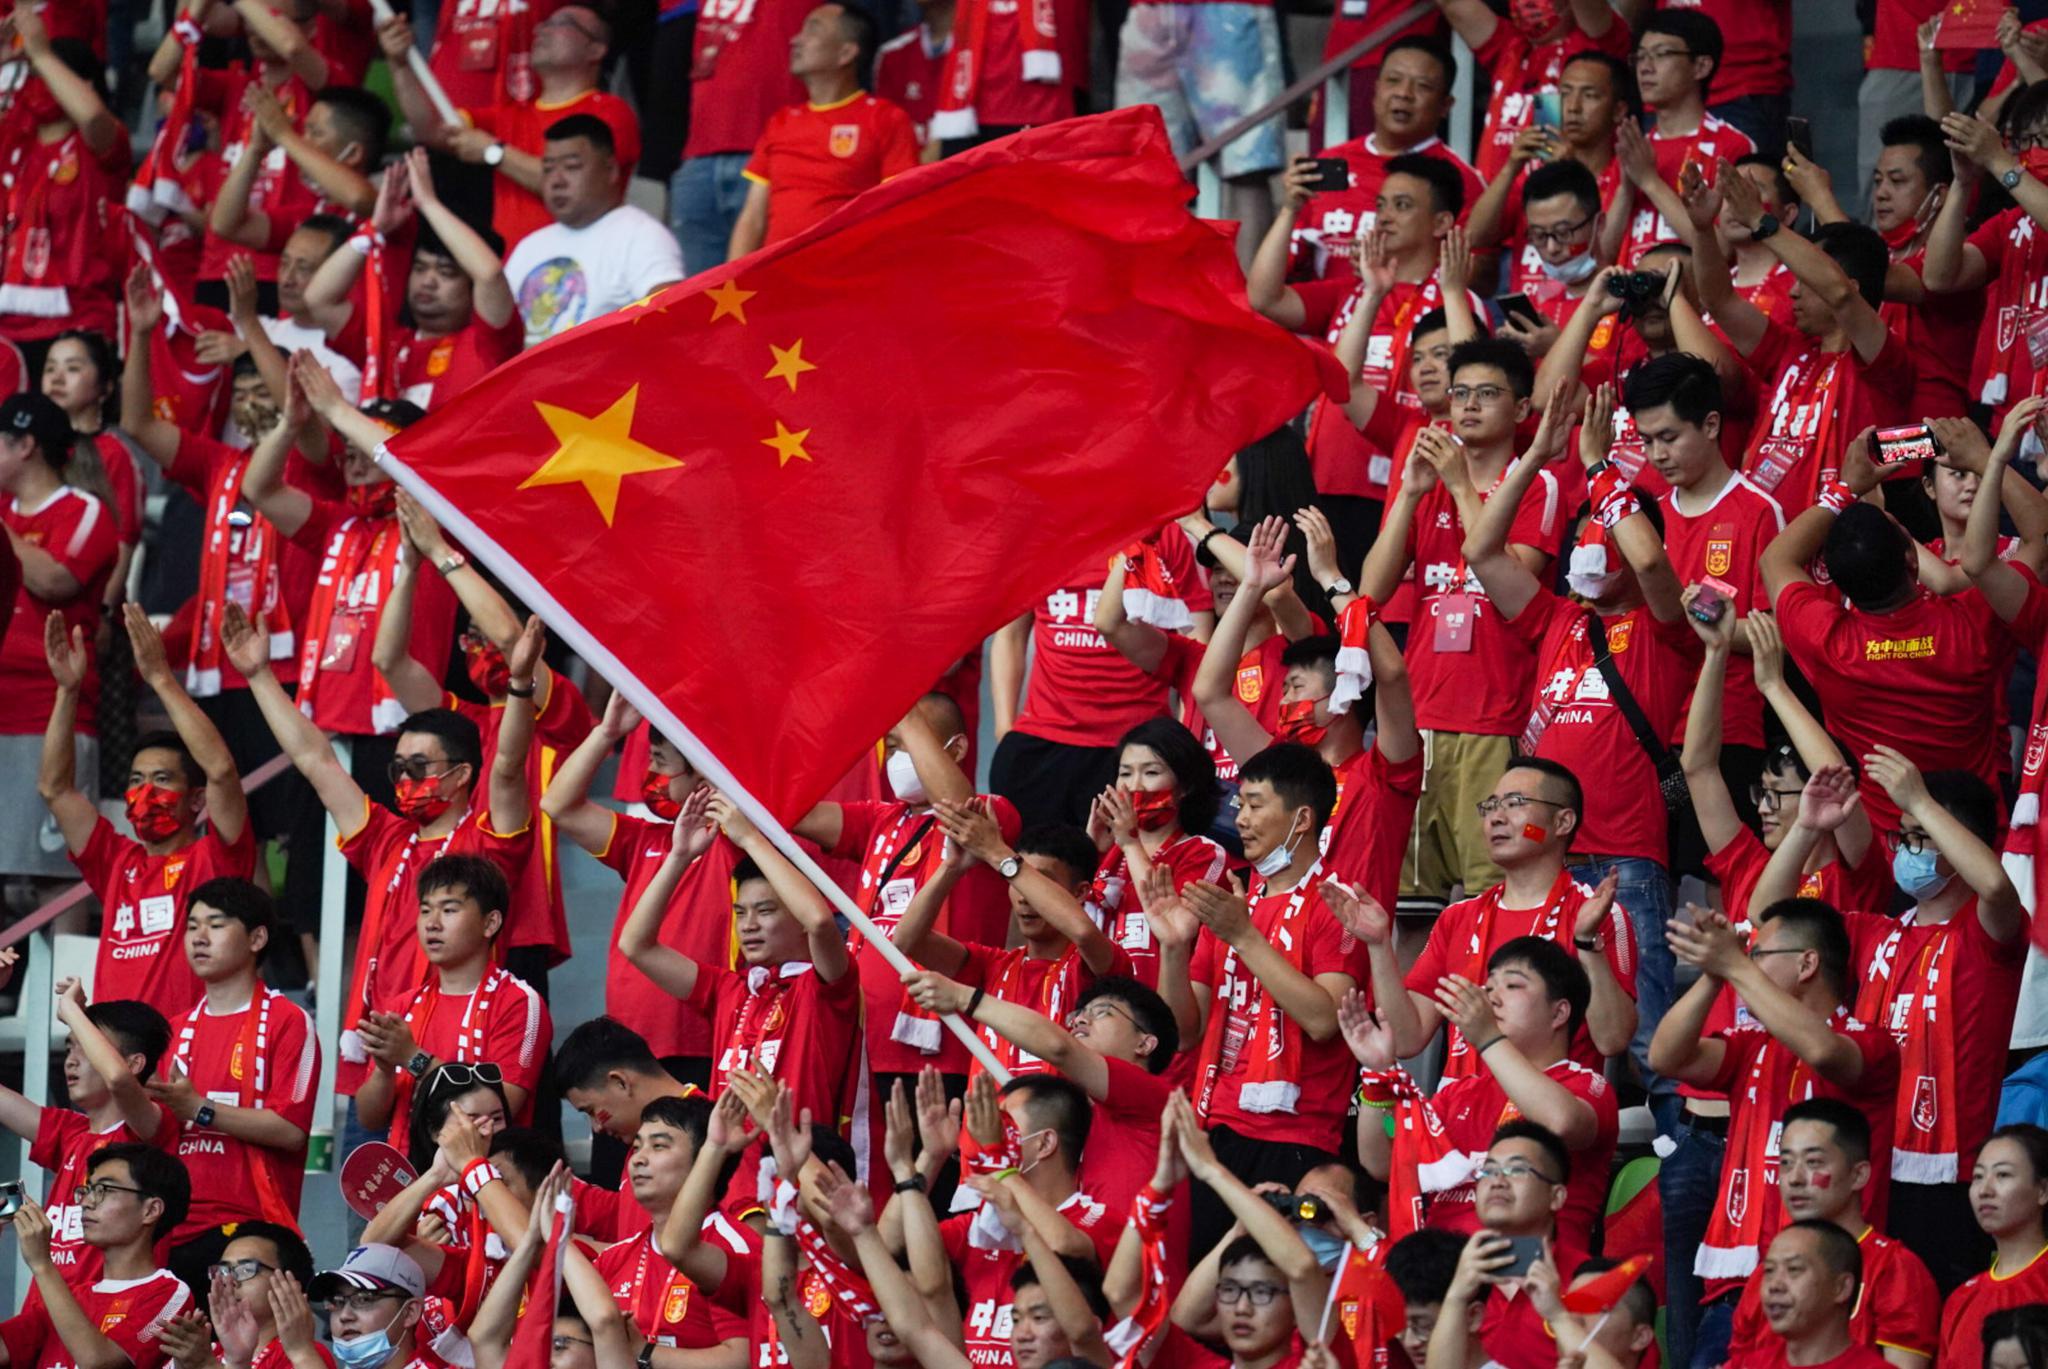 中国男足队将踢10场比赛为亚运会做准备 - 2023年2月14日, 俄罗斯卫星通讯社